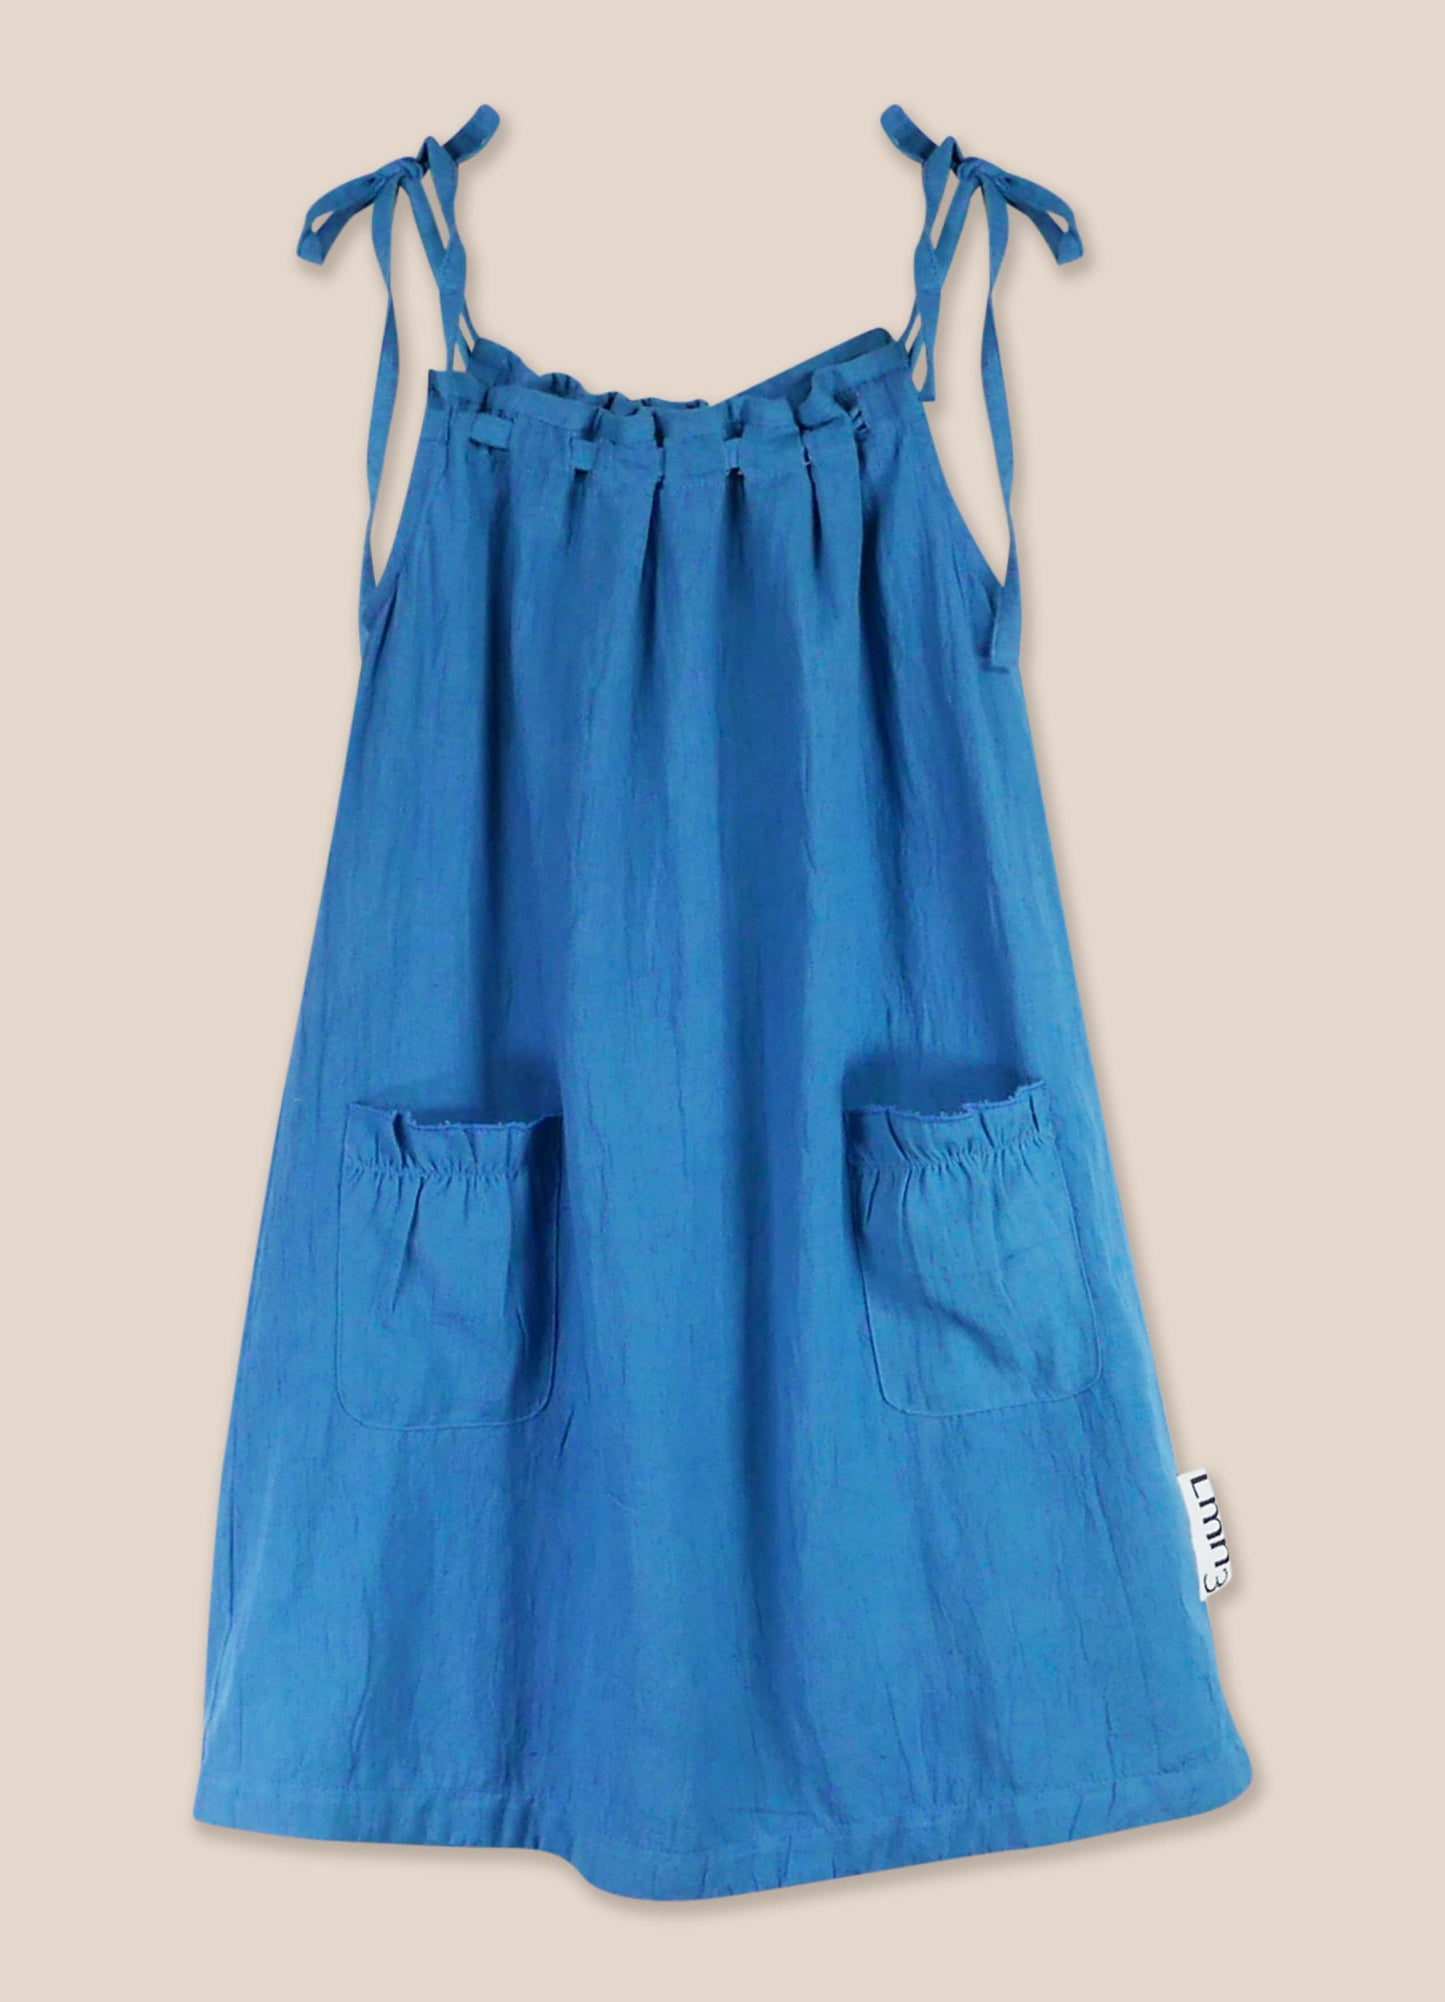 Dress No. 40 Provincial Blue